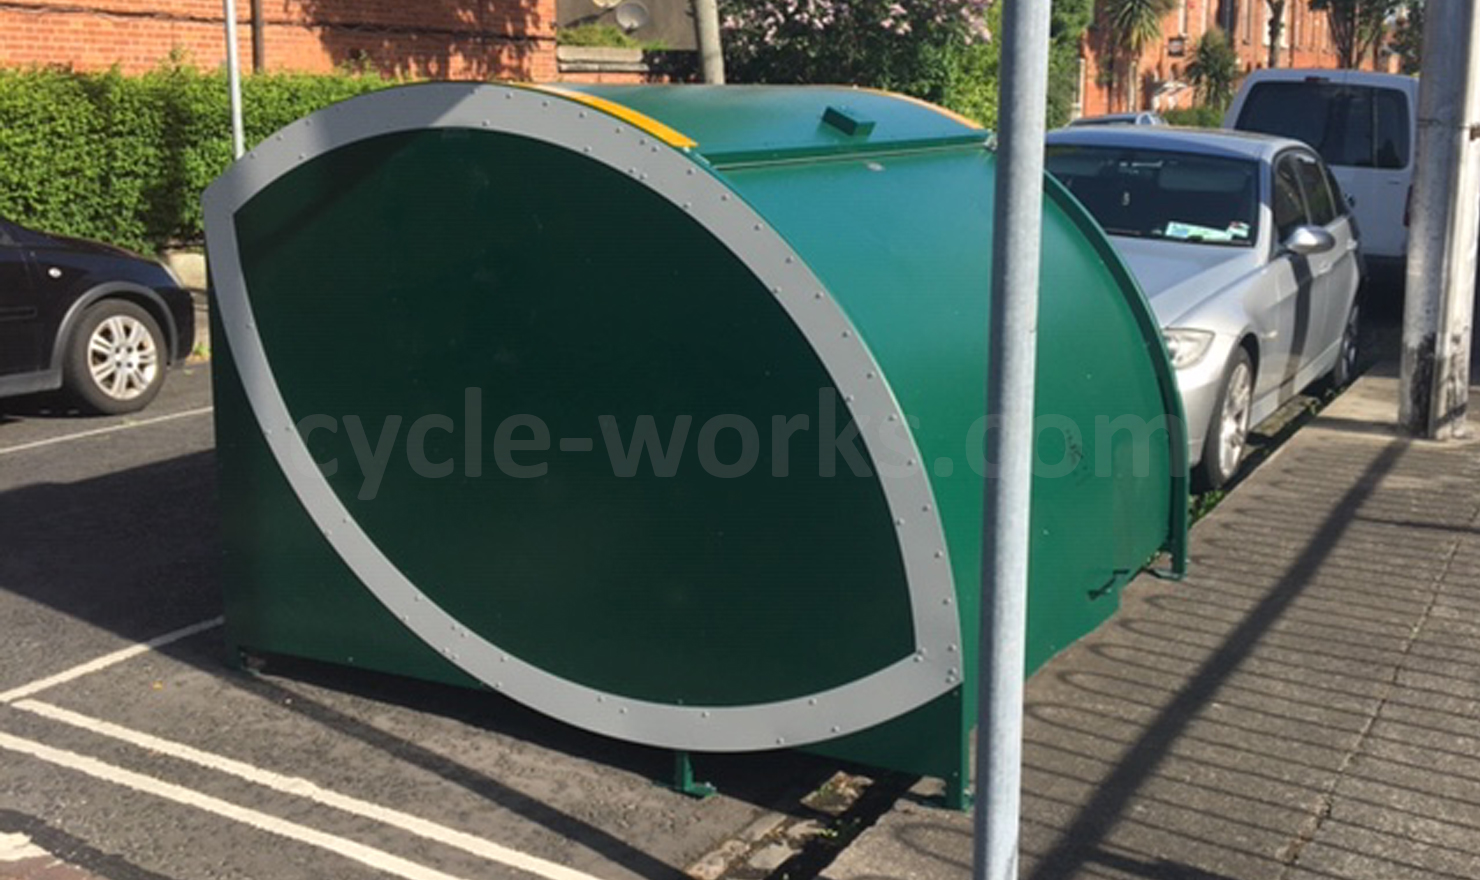 Cycle-Works Velo-Store Bike Storage Enmor Street in Dublin